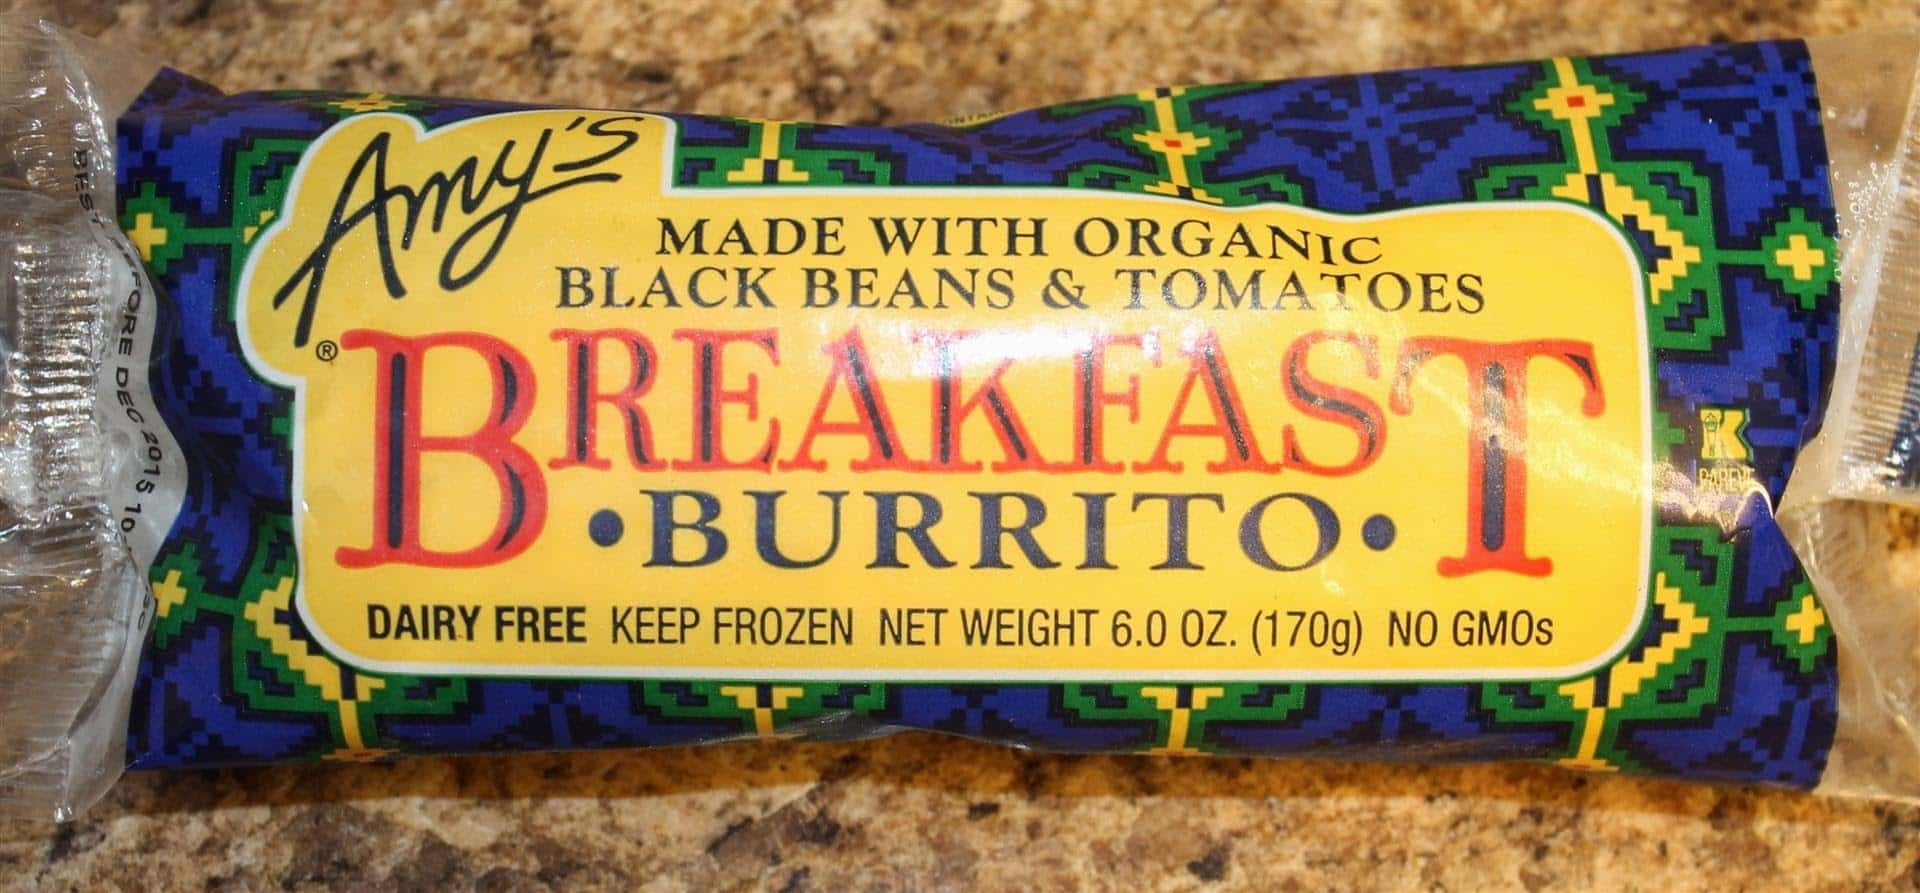 Amy’s Breakfast Burrito Health Frozen Foods